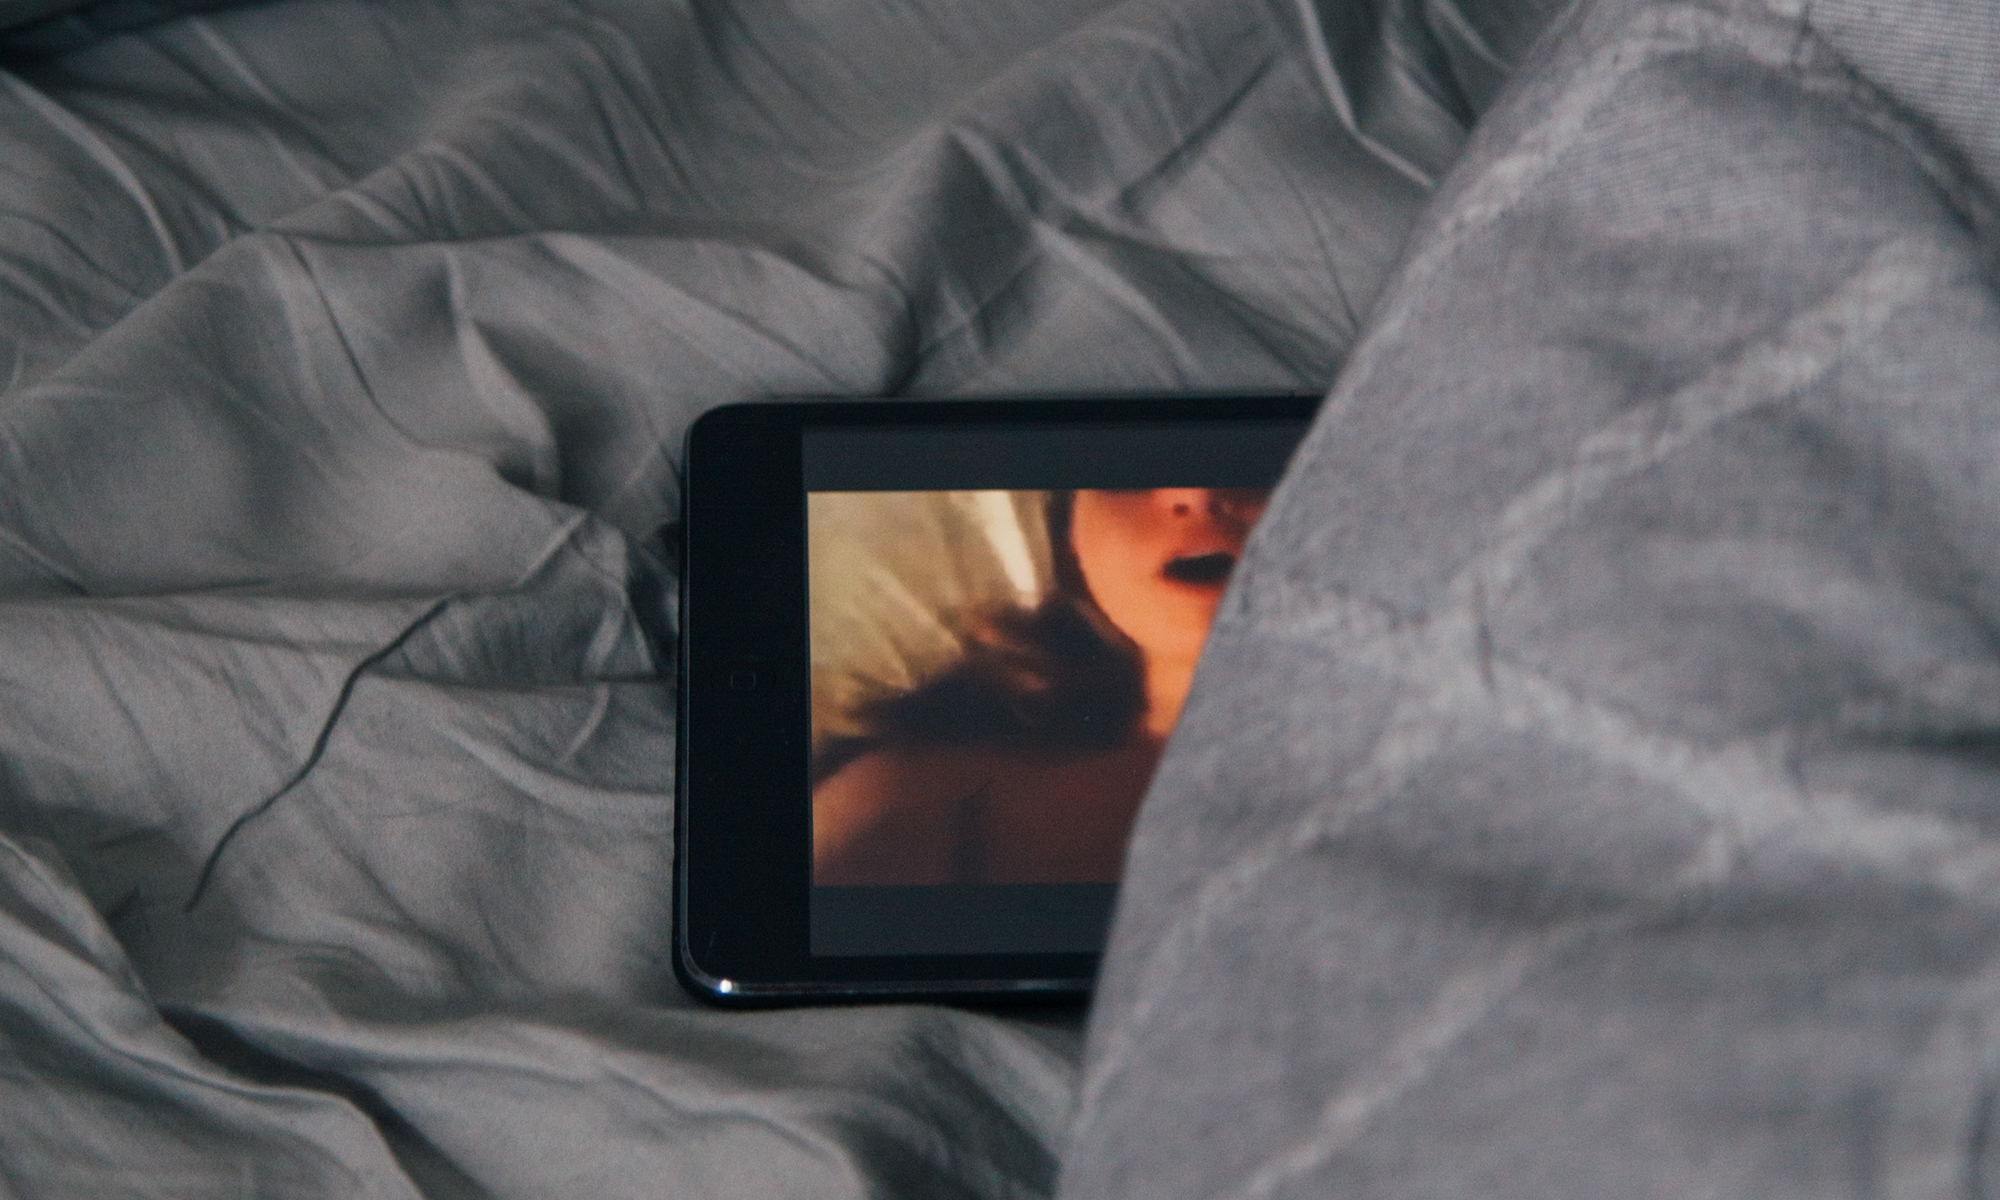 Smartphone liegt auf dem Bett, auf ihm ist eine stöhnende Frau zu erkennen. Das Handy wir teilweise von der grauen Bettwäsche bedeckt.